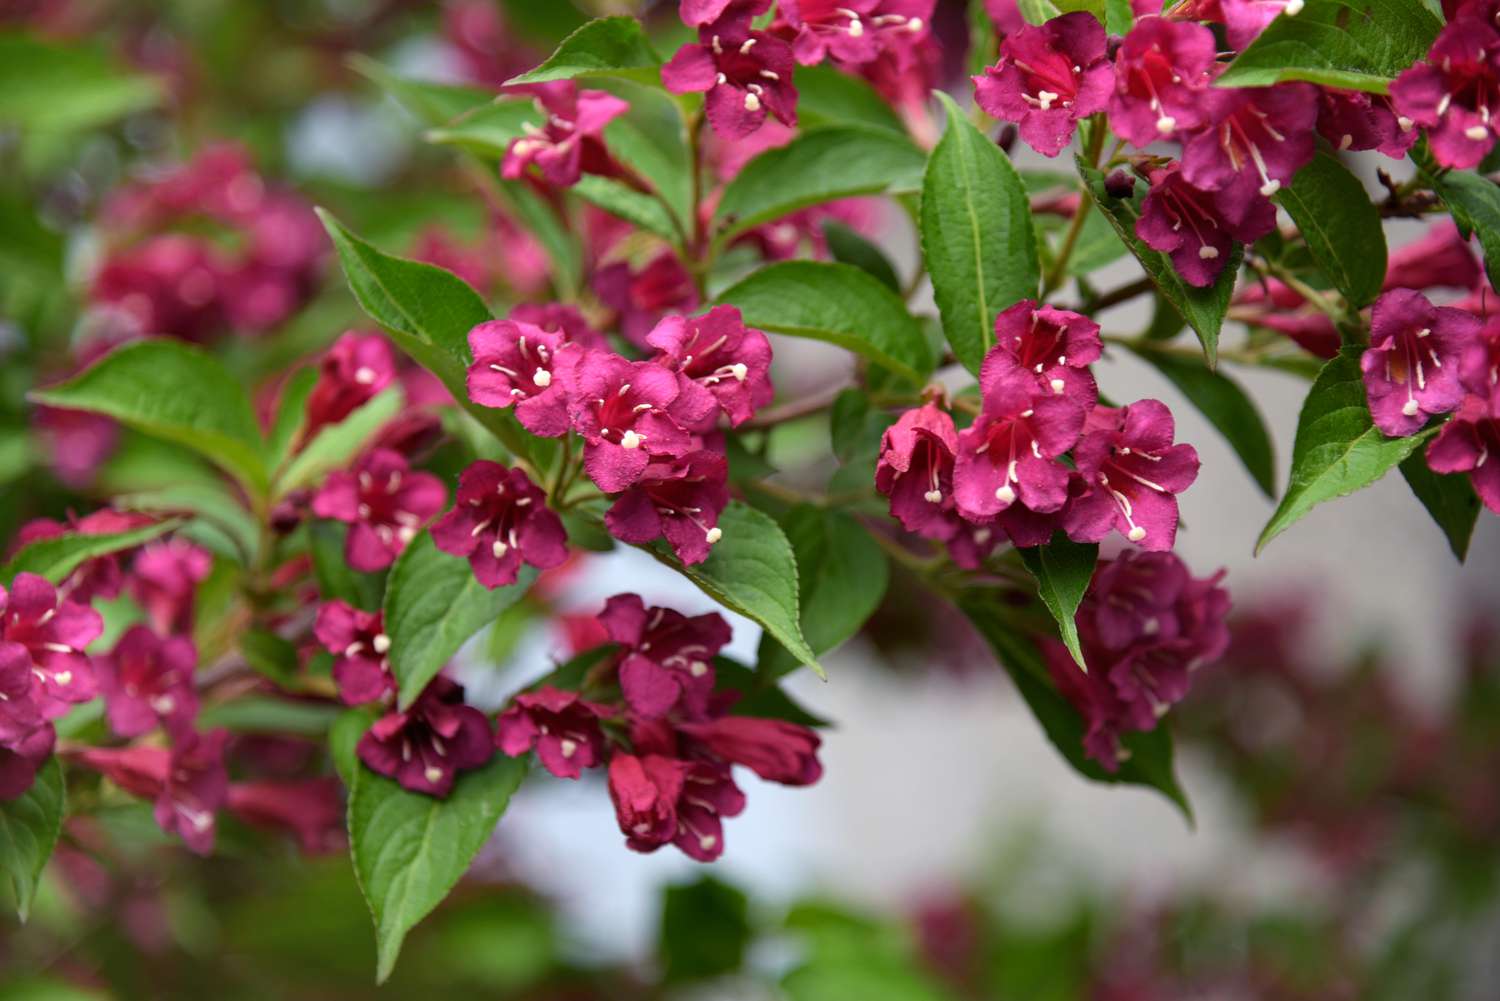 Weigela-Pflanze mit tiefrosa Blüten, die Kolibris anziehen